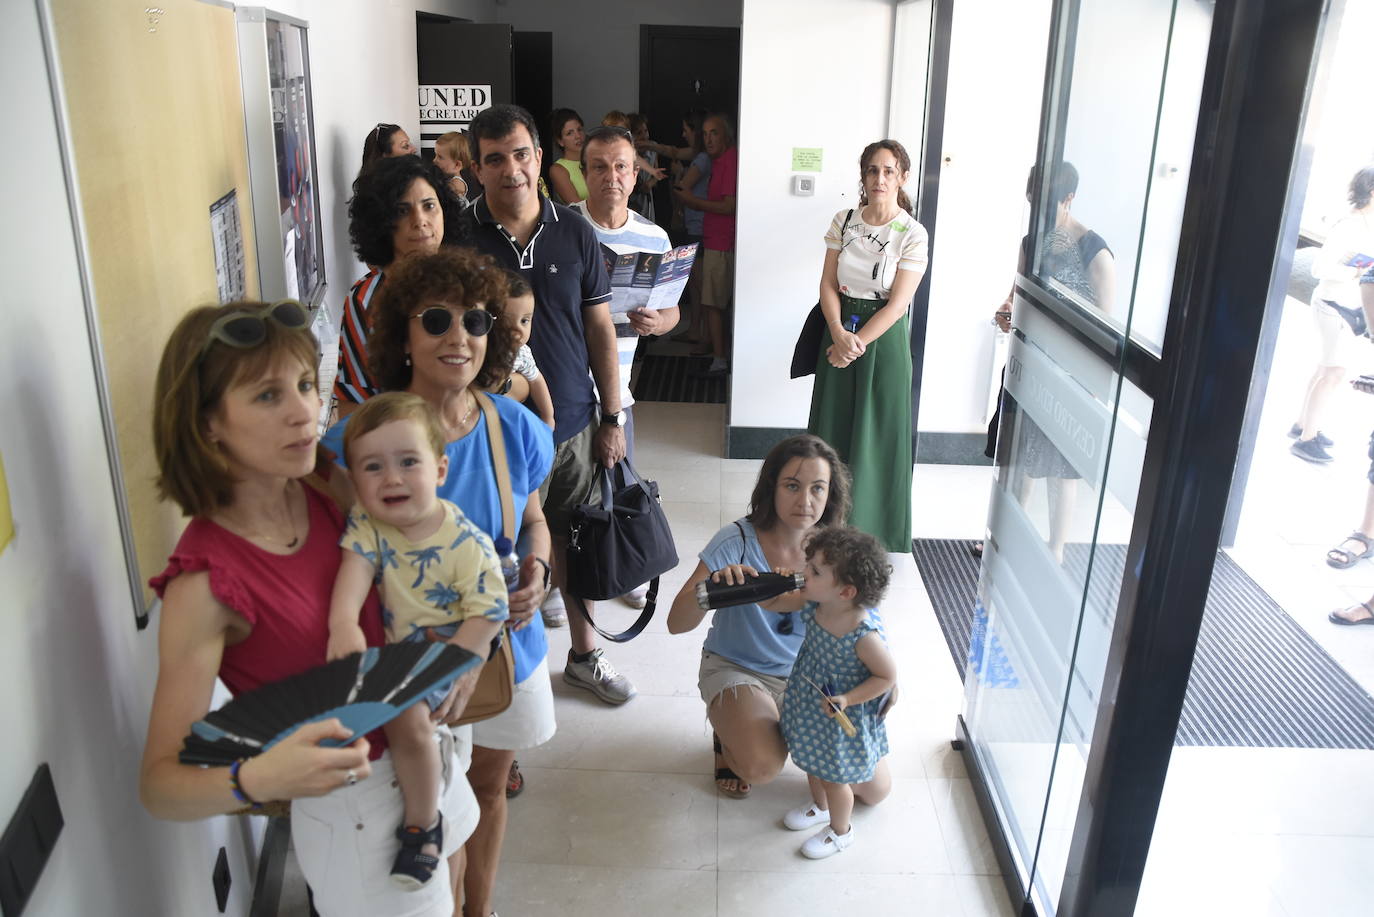 Desde bebés a adultos disfrutan del intenso ecuador de la Feria de Teatro de Castilla y León en Ciudad Rodrigo